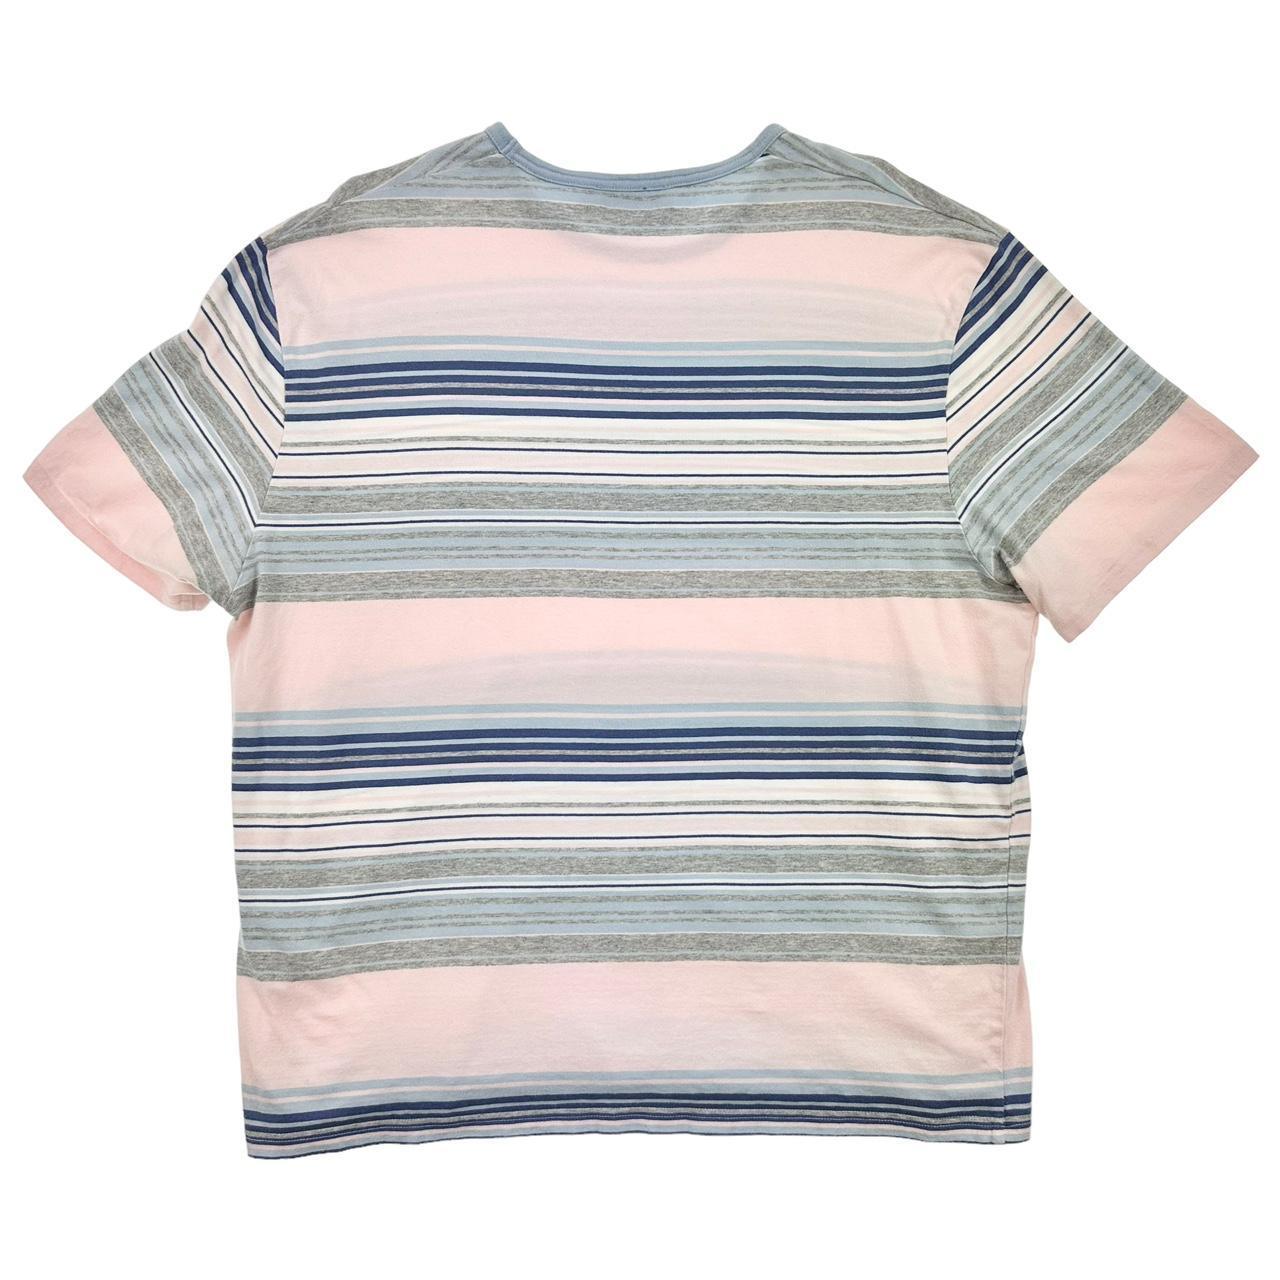 Vintage YSL Yves Saint Laurent striped t shirt size L - Known Source